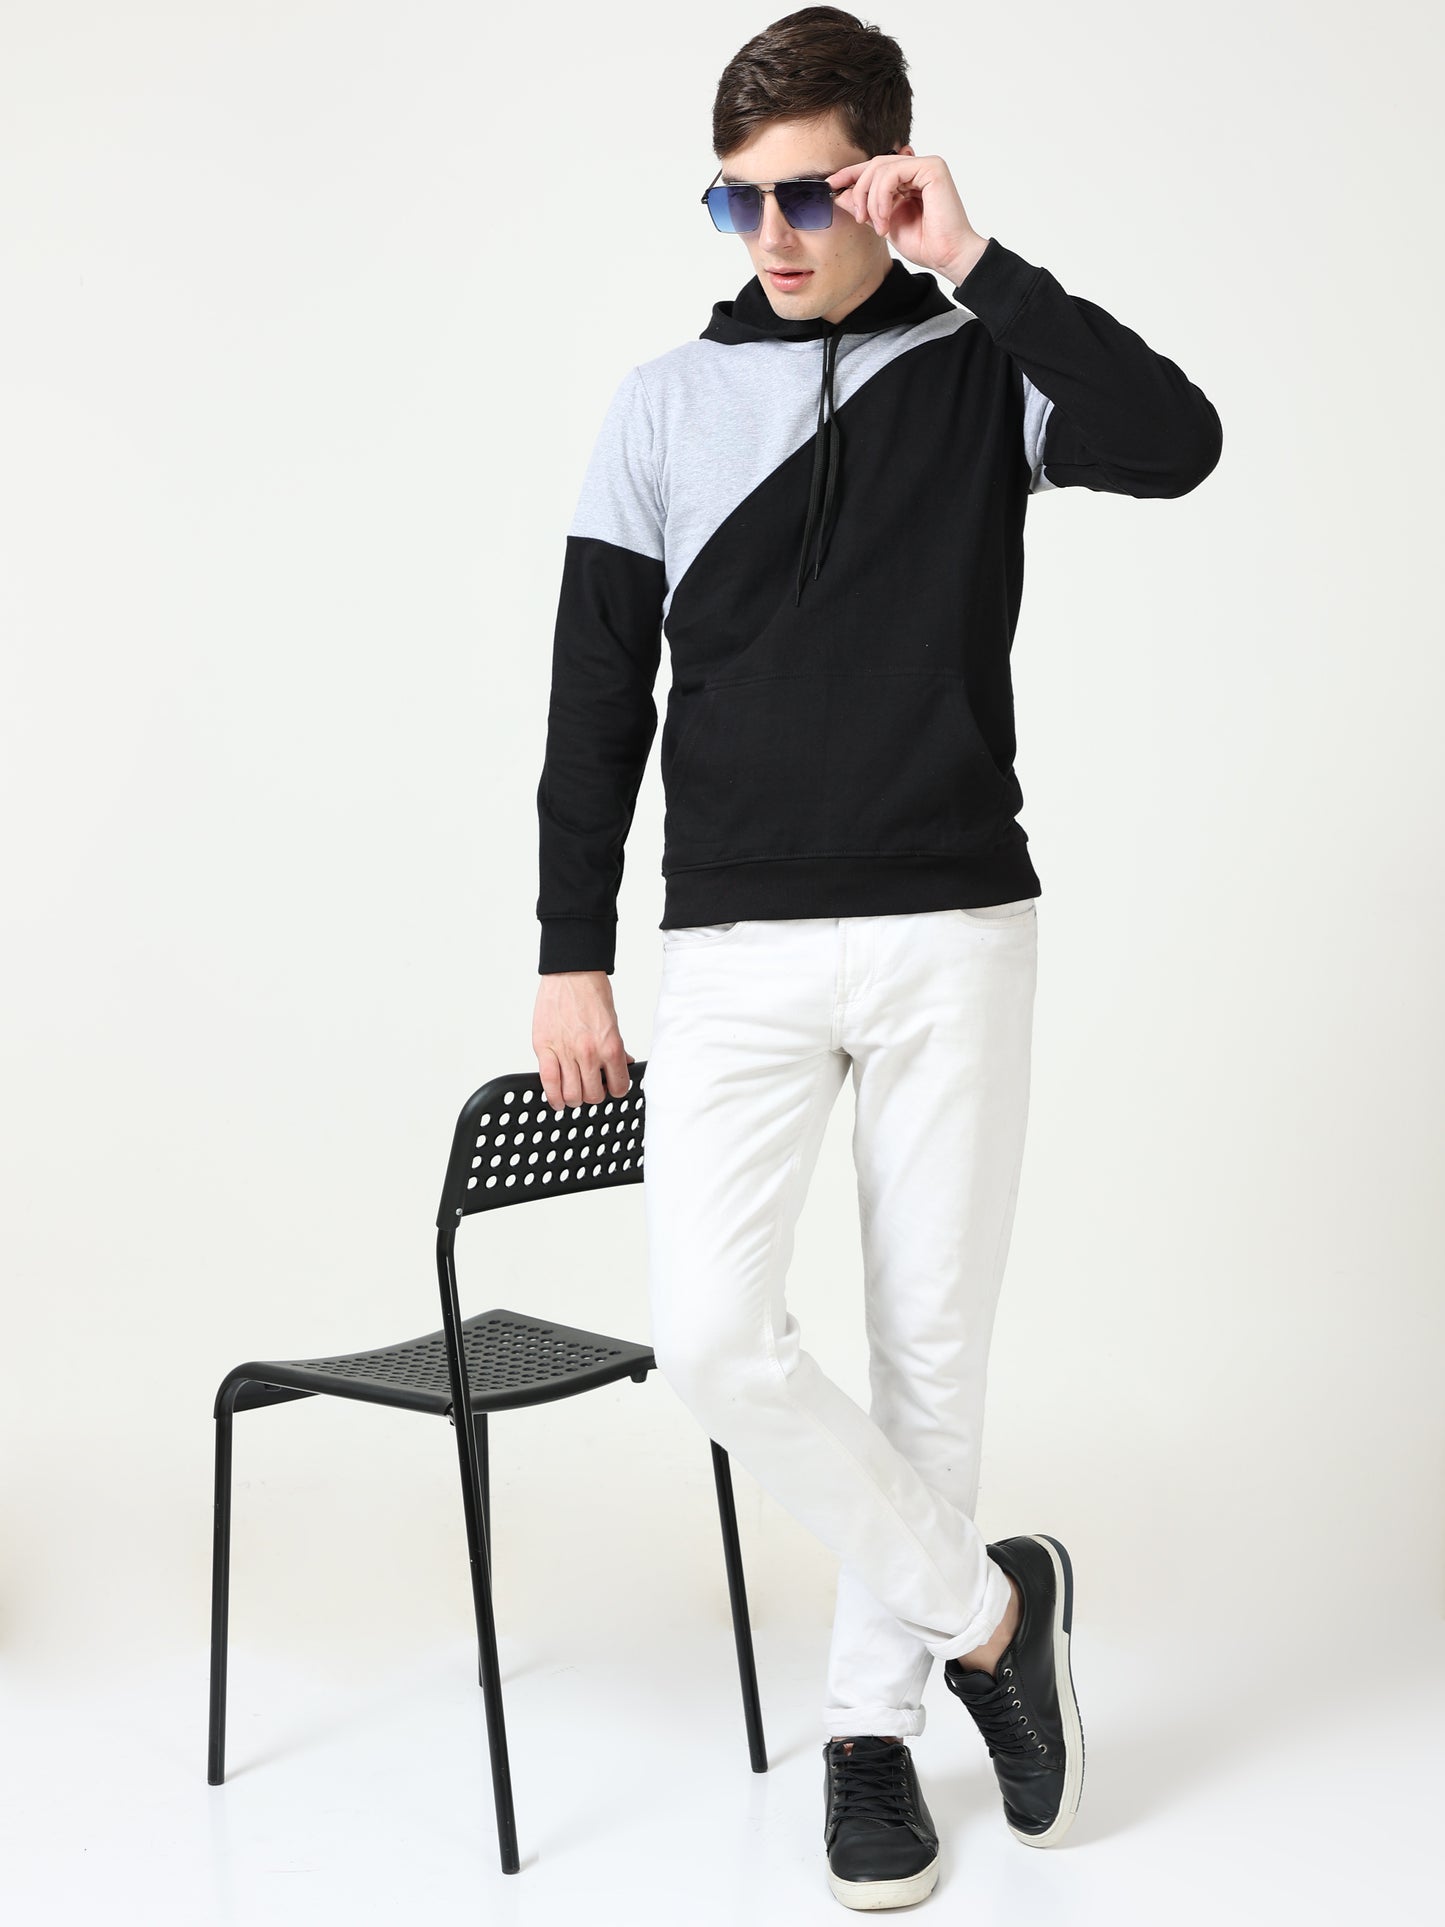 Men's Cotton Color Block Sweatshirt Greyblack Color Hoodies